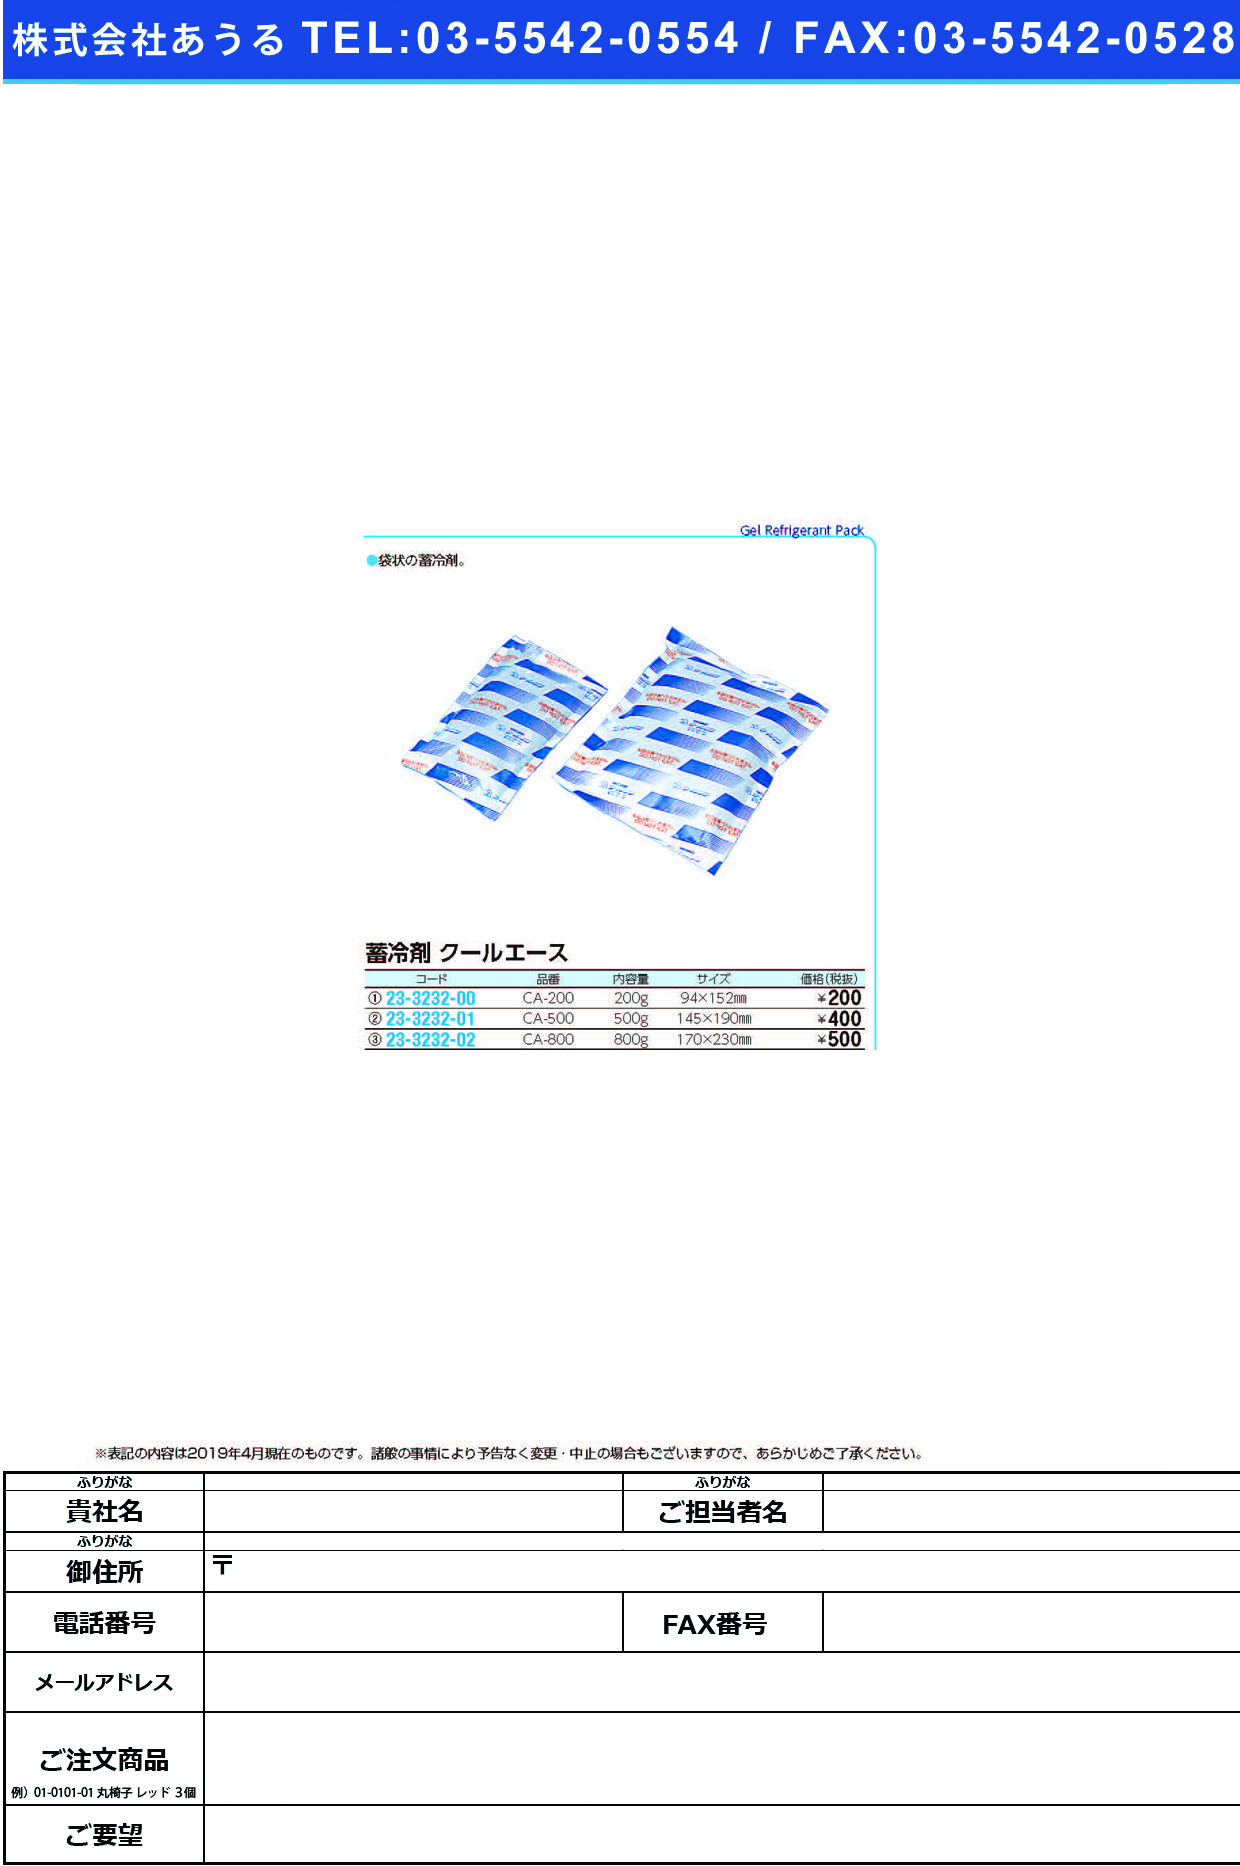 (23-3232-02)蓄冷剤クールエース CA-800(800G) ﾁｸﾚｲｻﾞｲｸｰﾙｴｰｽ【1個単位】【2019年カタログ商品】